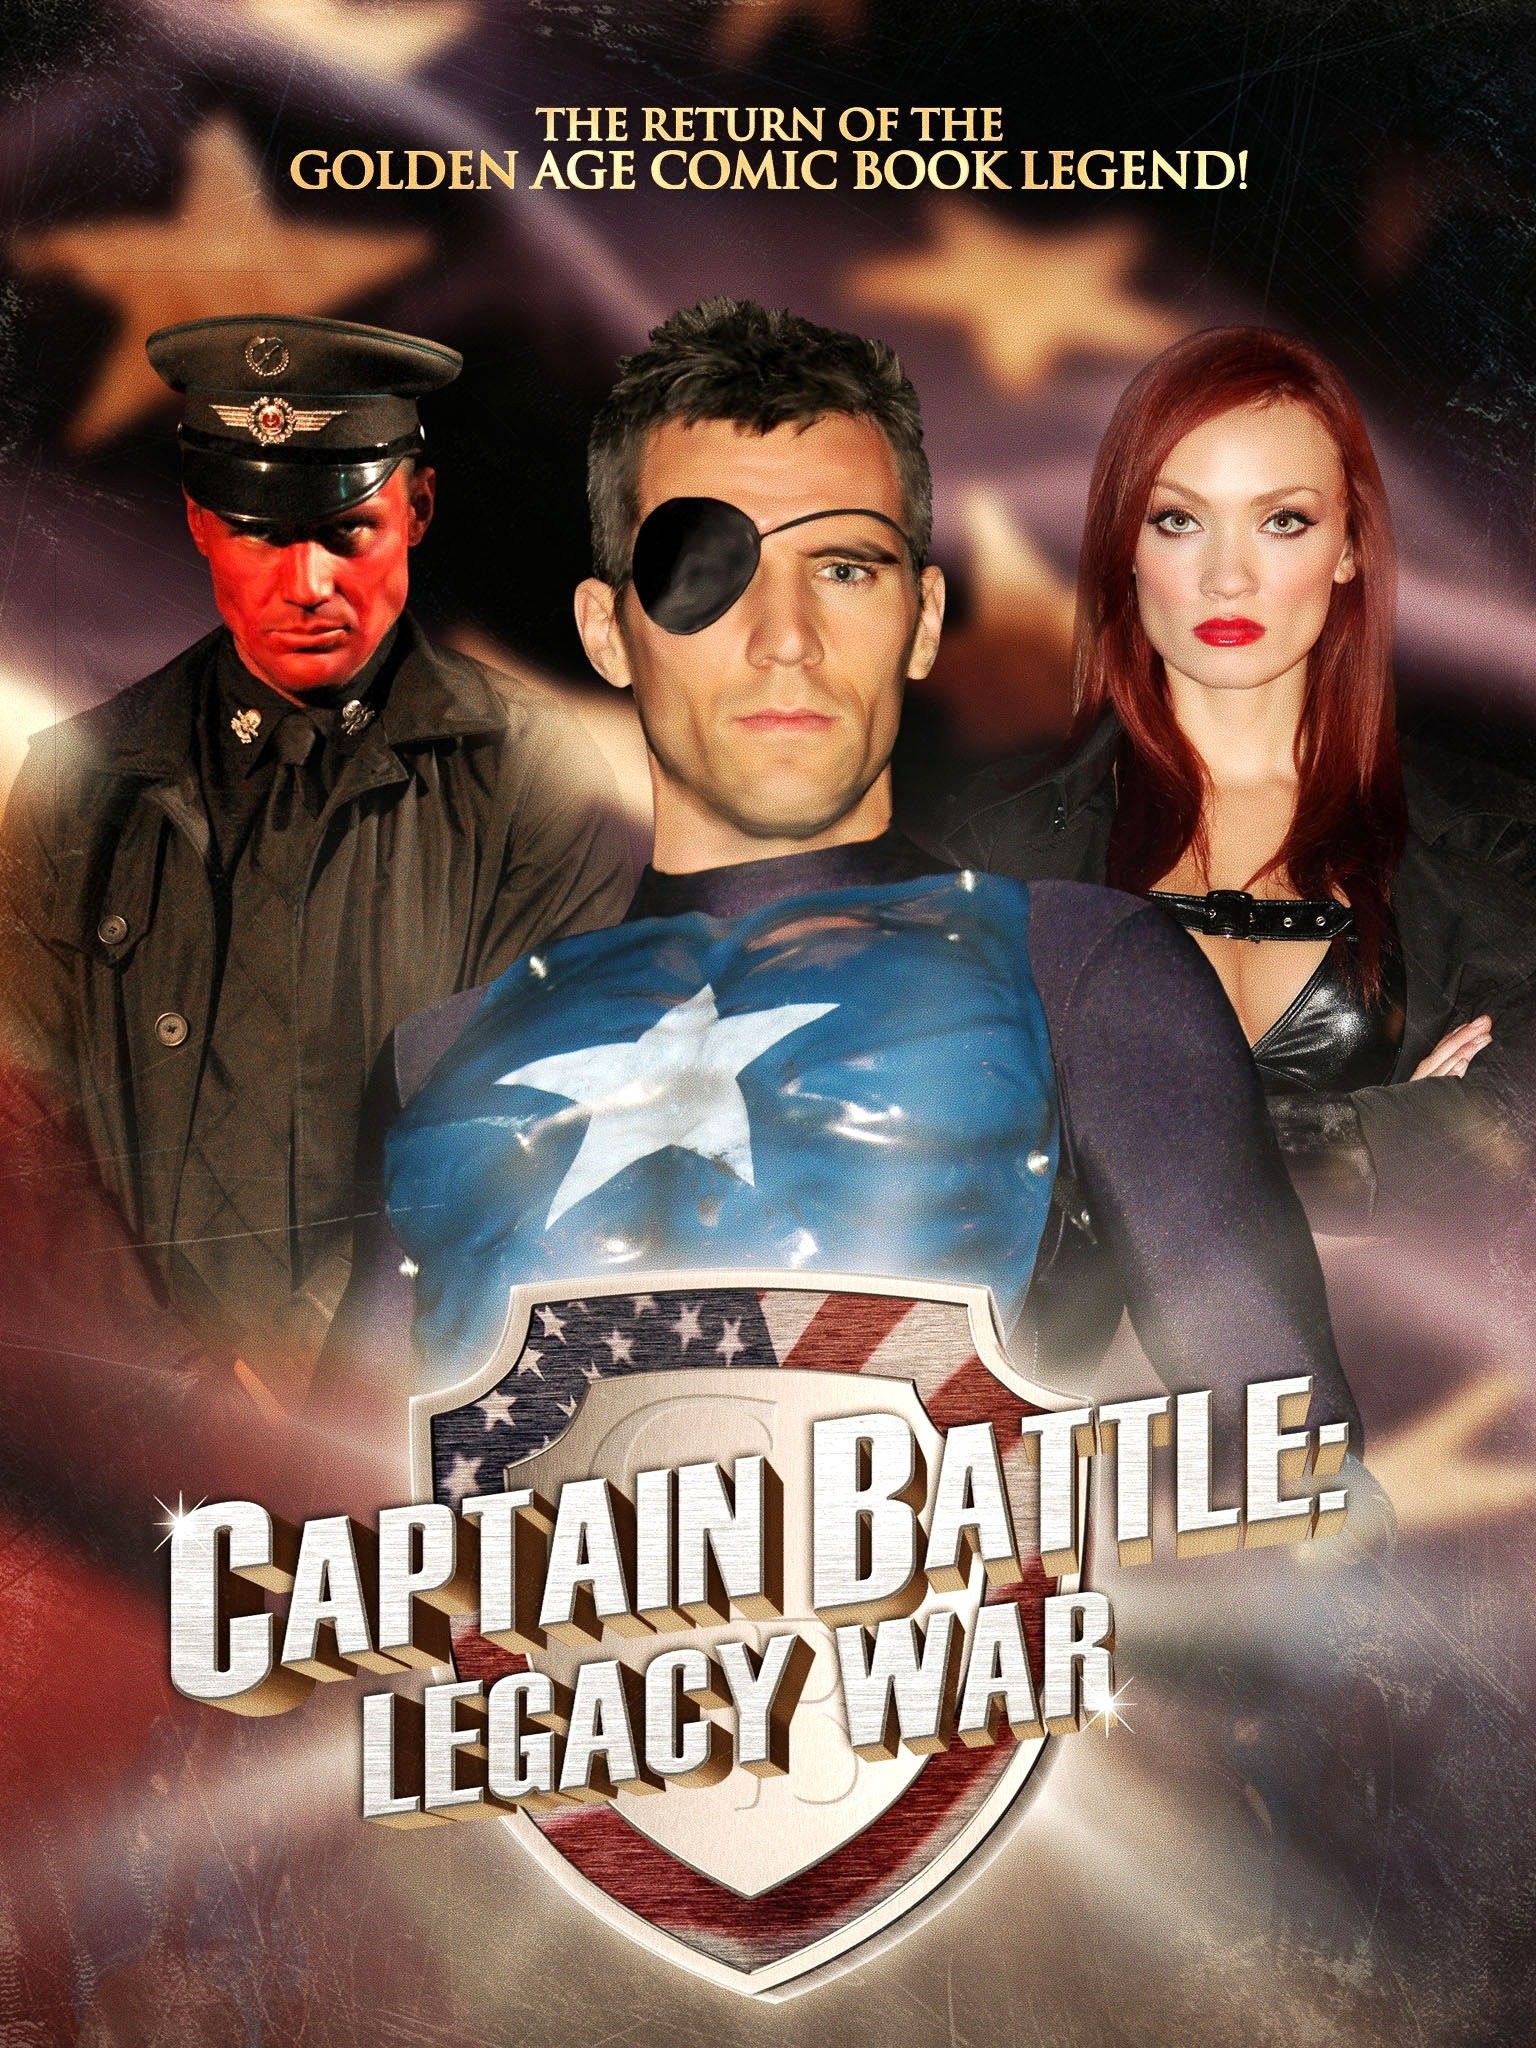 Captain battle: legacy war